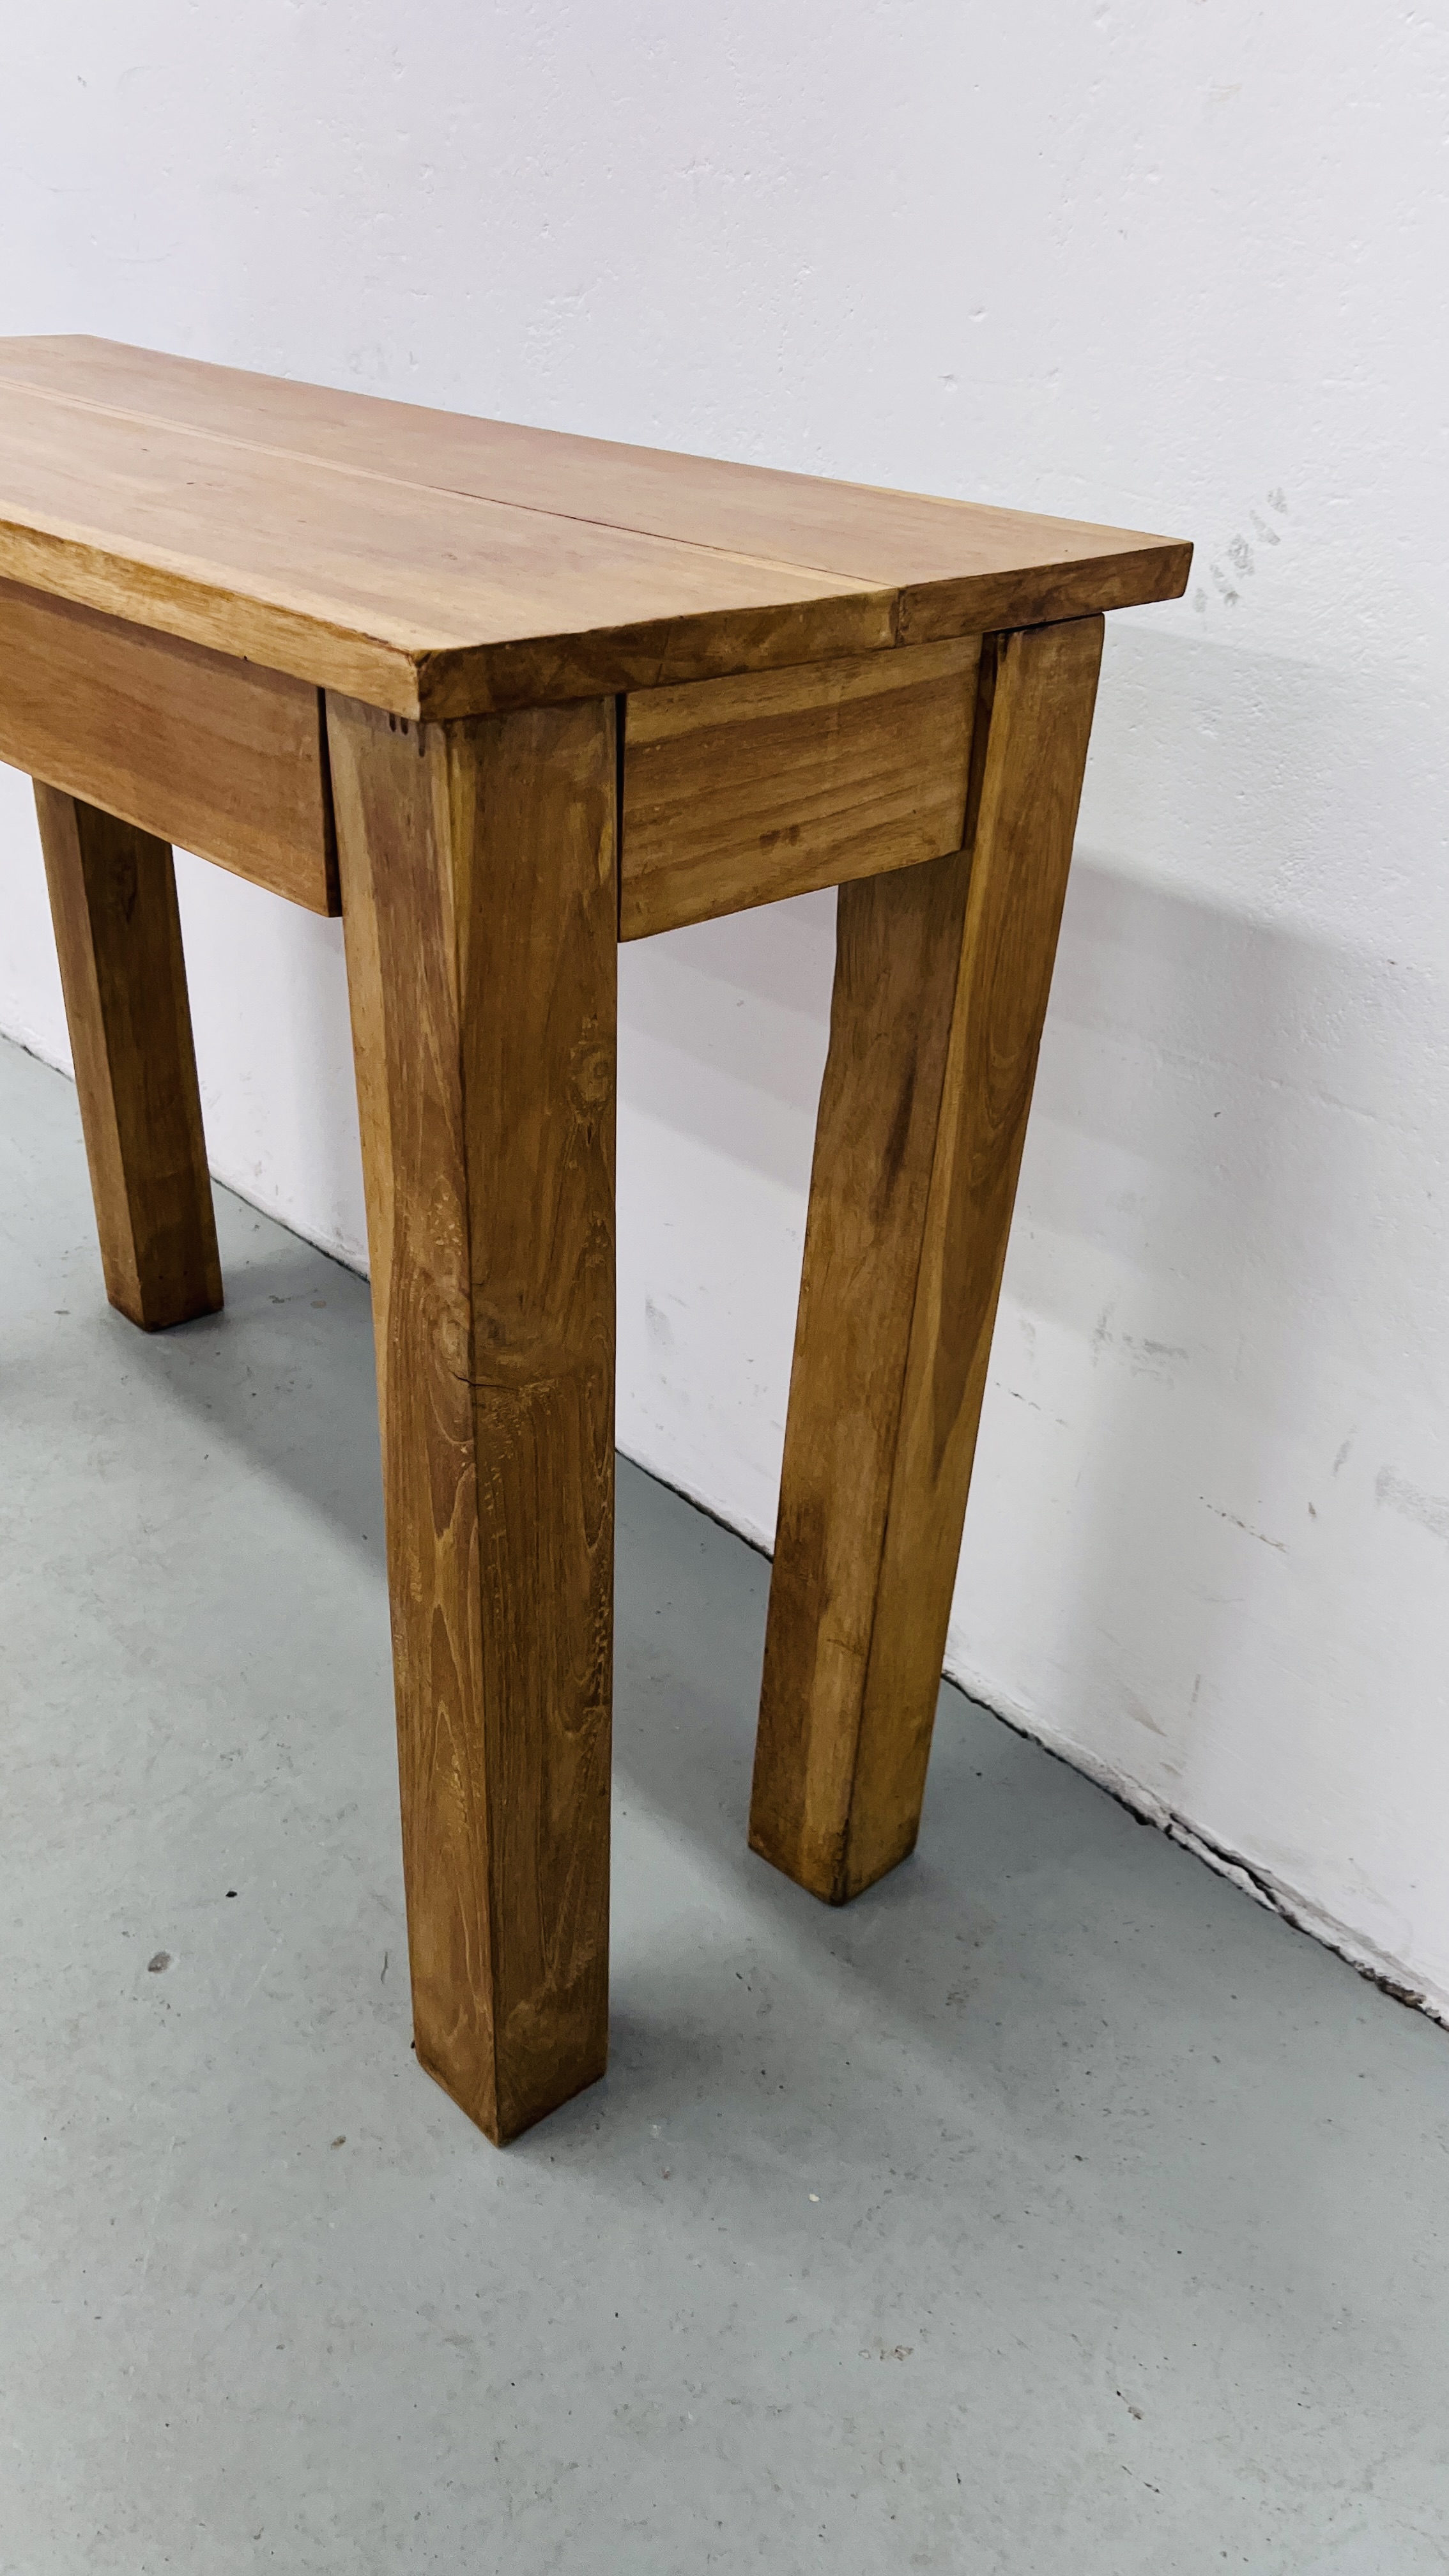 A MODERN HARDWOOD SIDE TABLE L 100CM, H 79CM. - Image 6 of 6